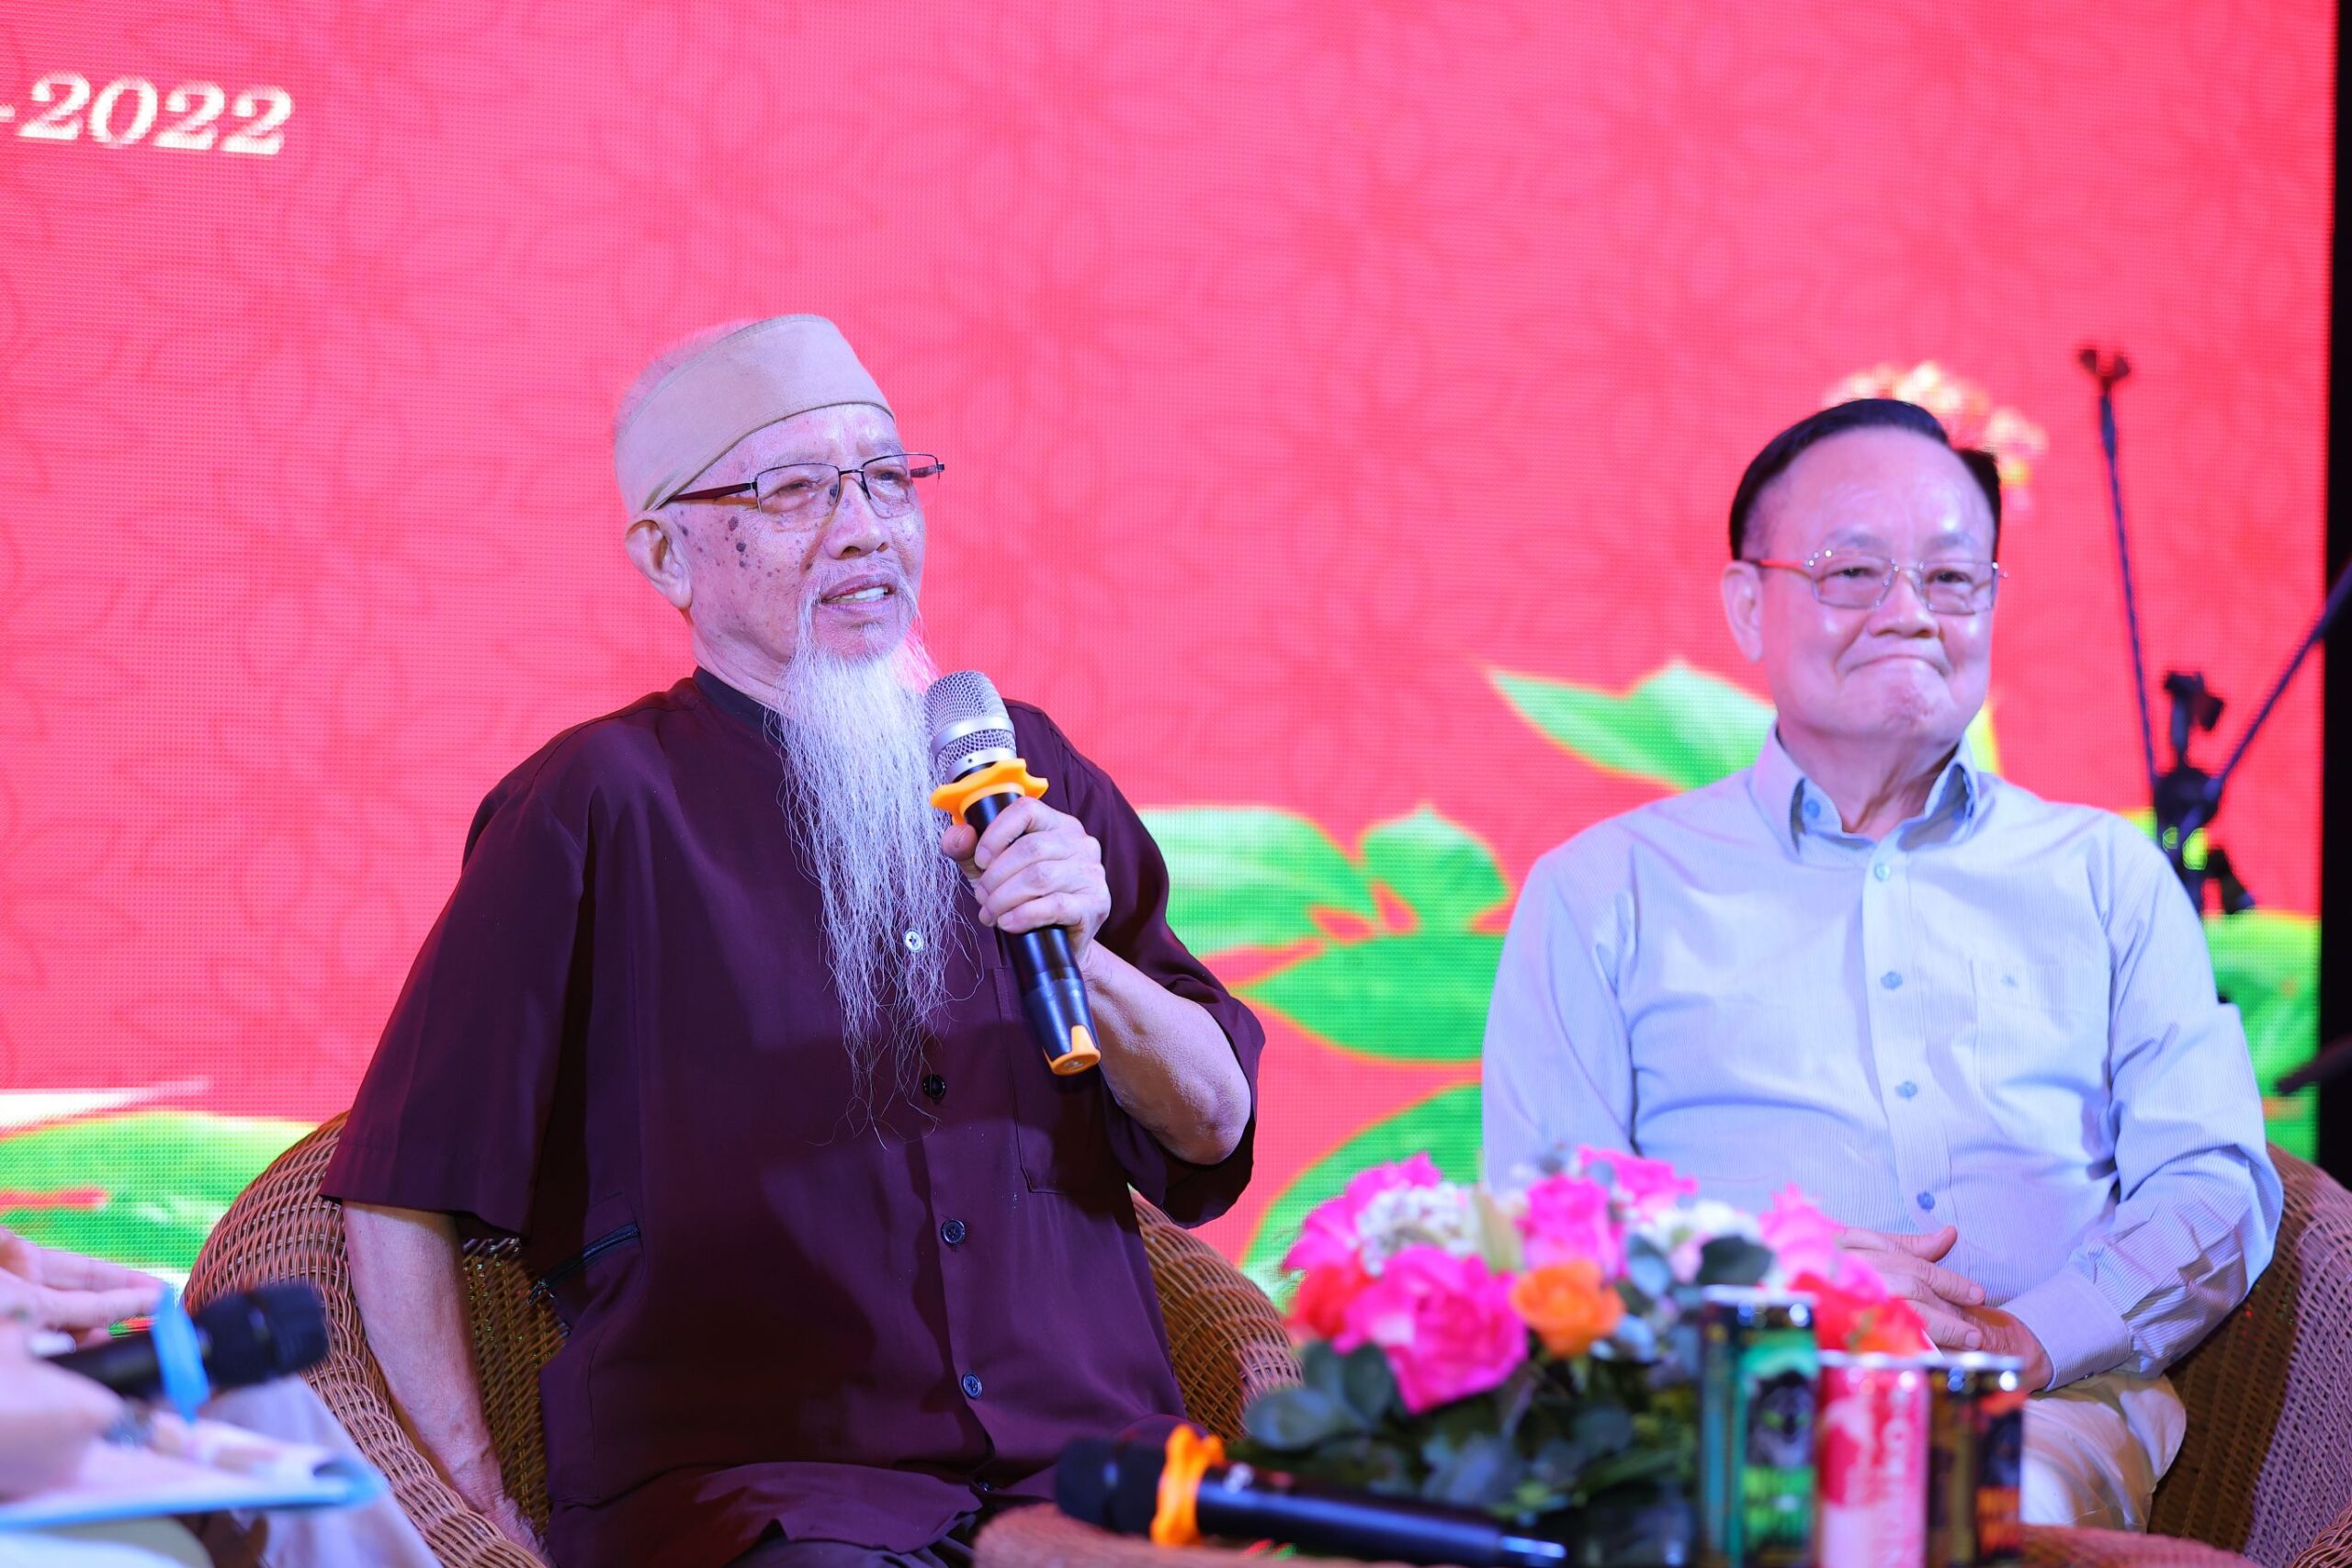 Dược sỹ Đào Kim Long (bên trái)-Người đầu tiên phát hiện ra cây Sâm Ngọc Linh đang chia sẻ tại đêm Gala Dinner.